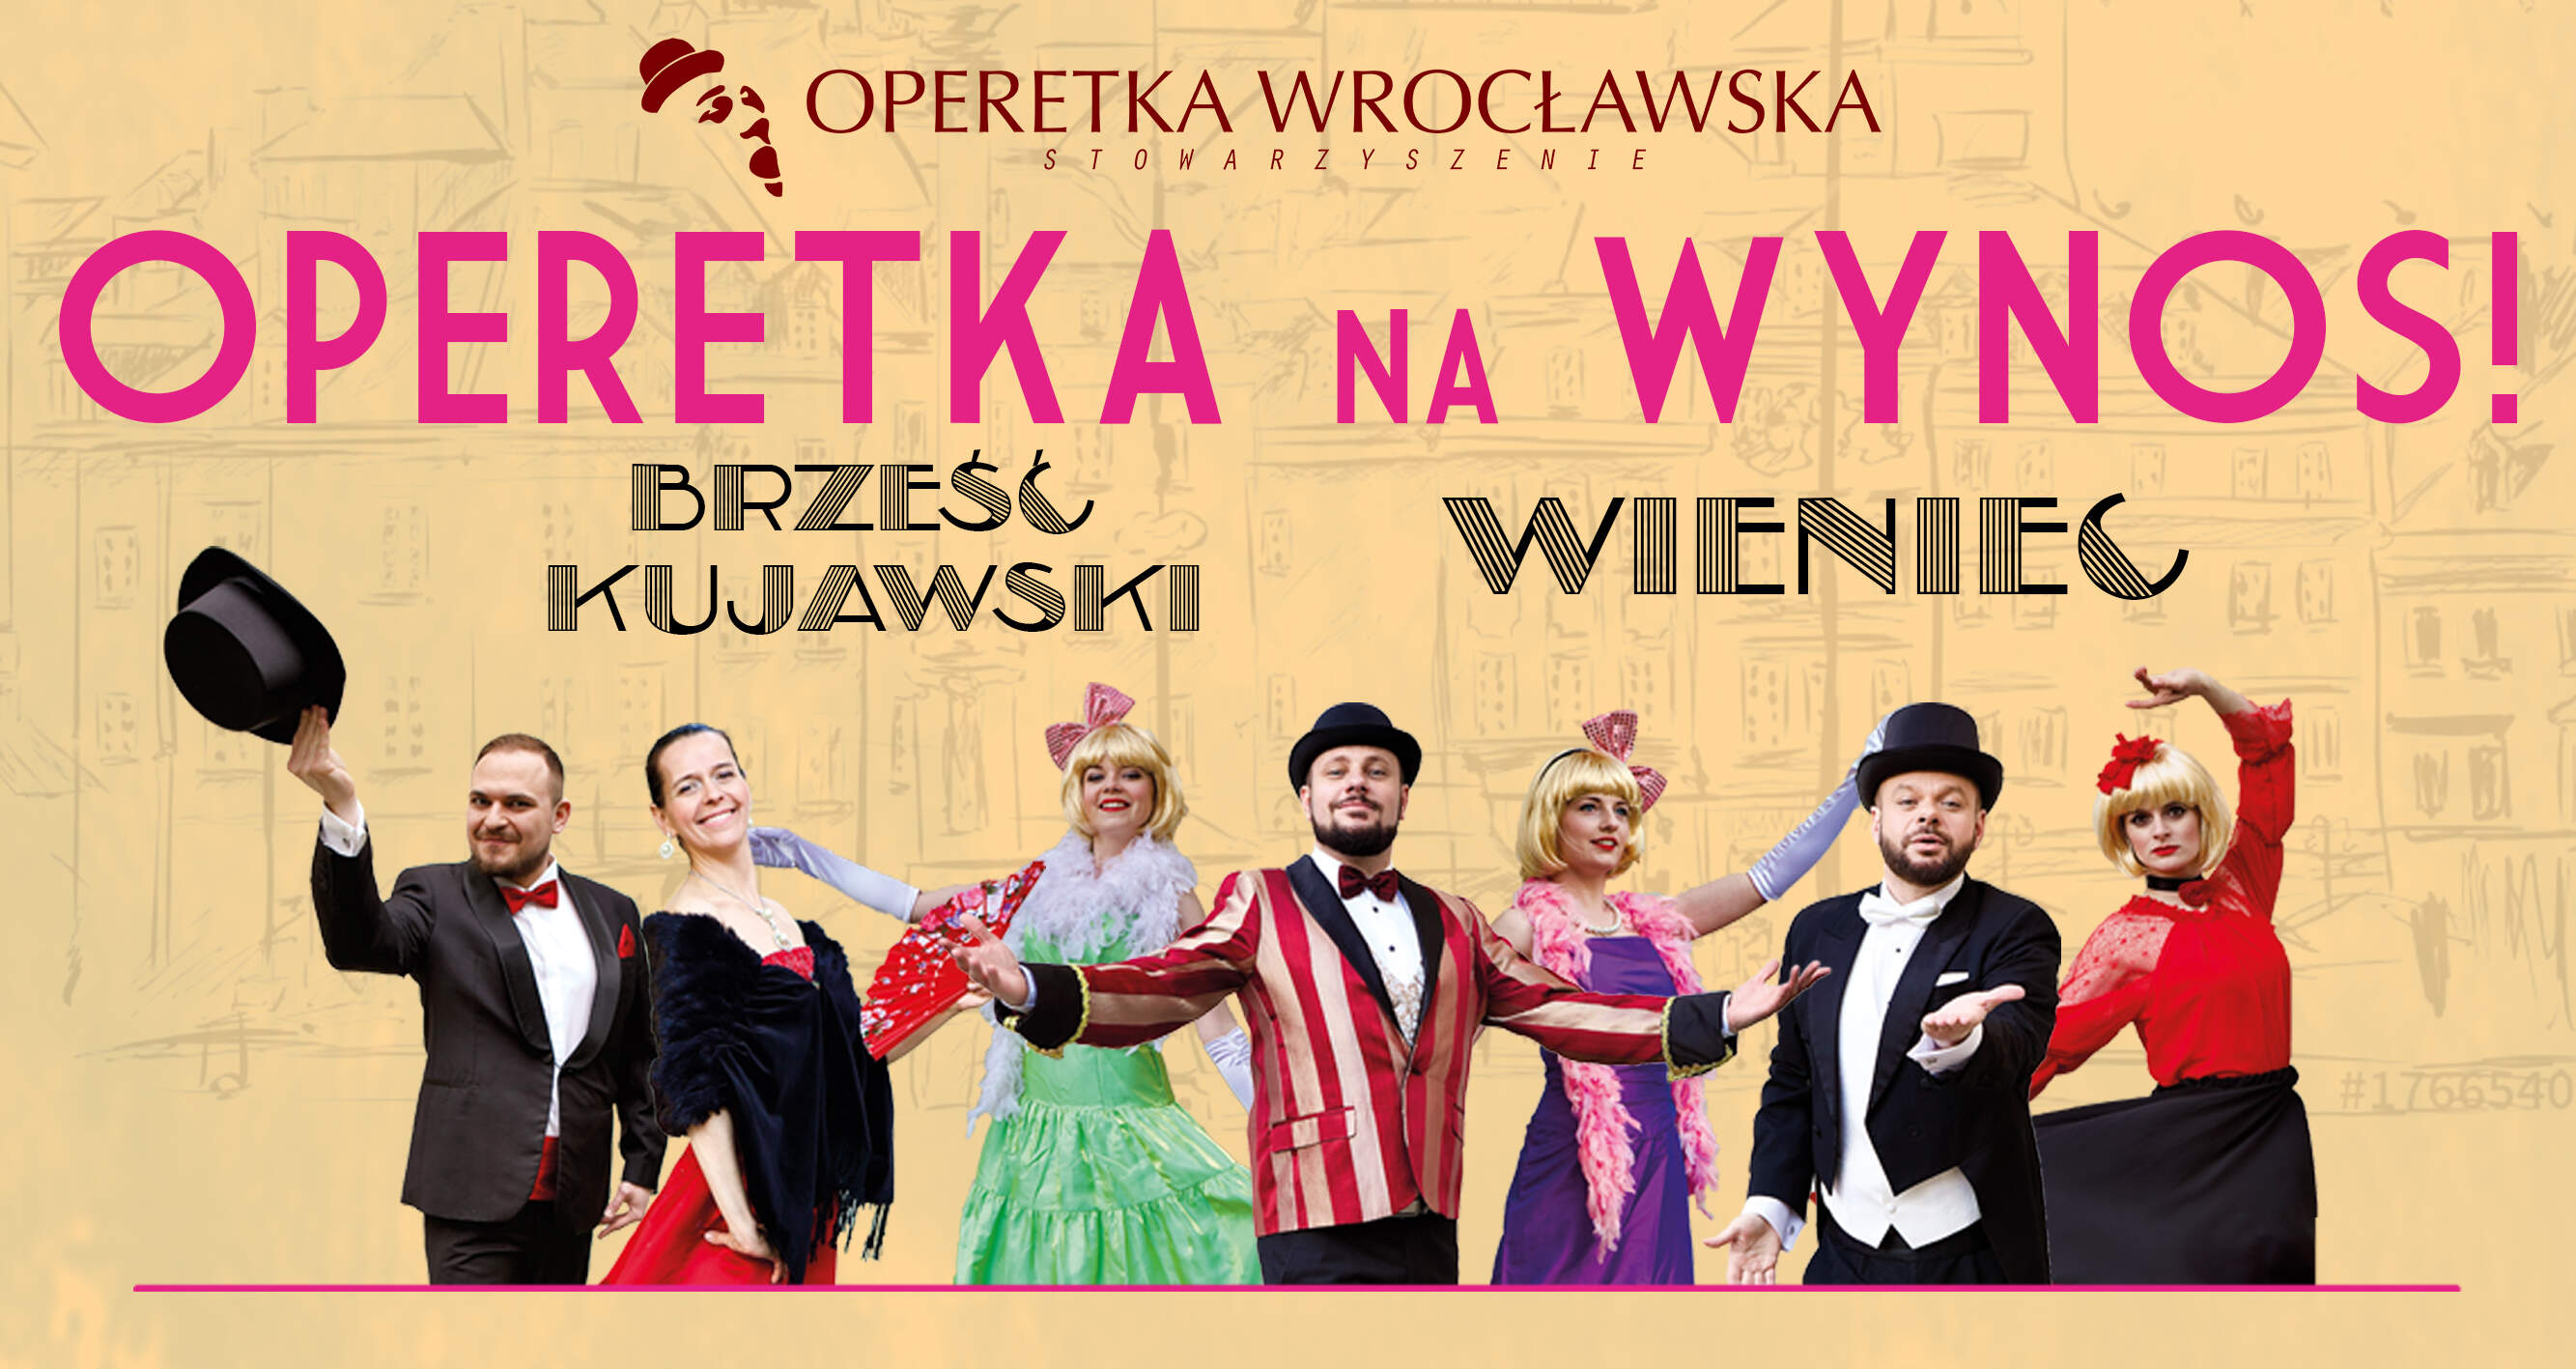 Operetka na WYNOS! #Brześć Kujawski i Wieniec [26.06.2021]